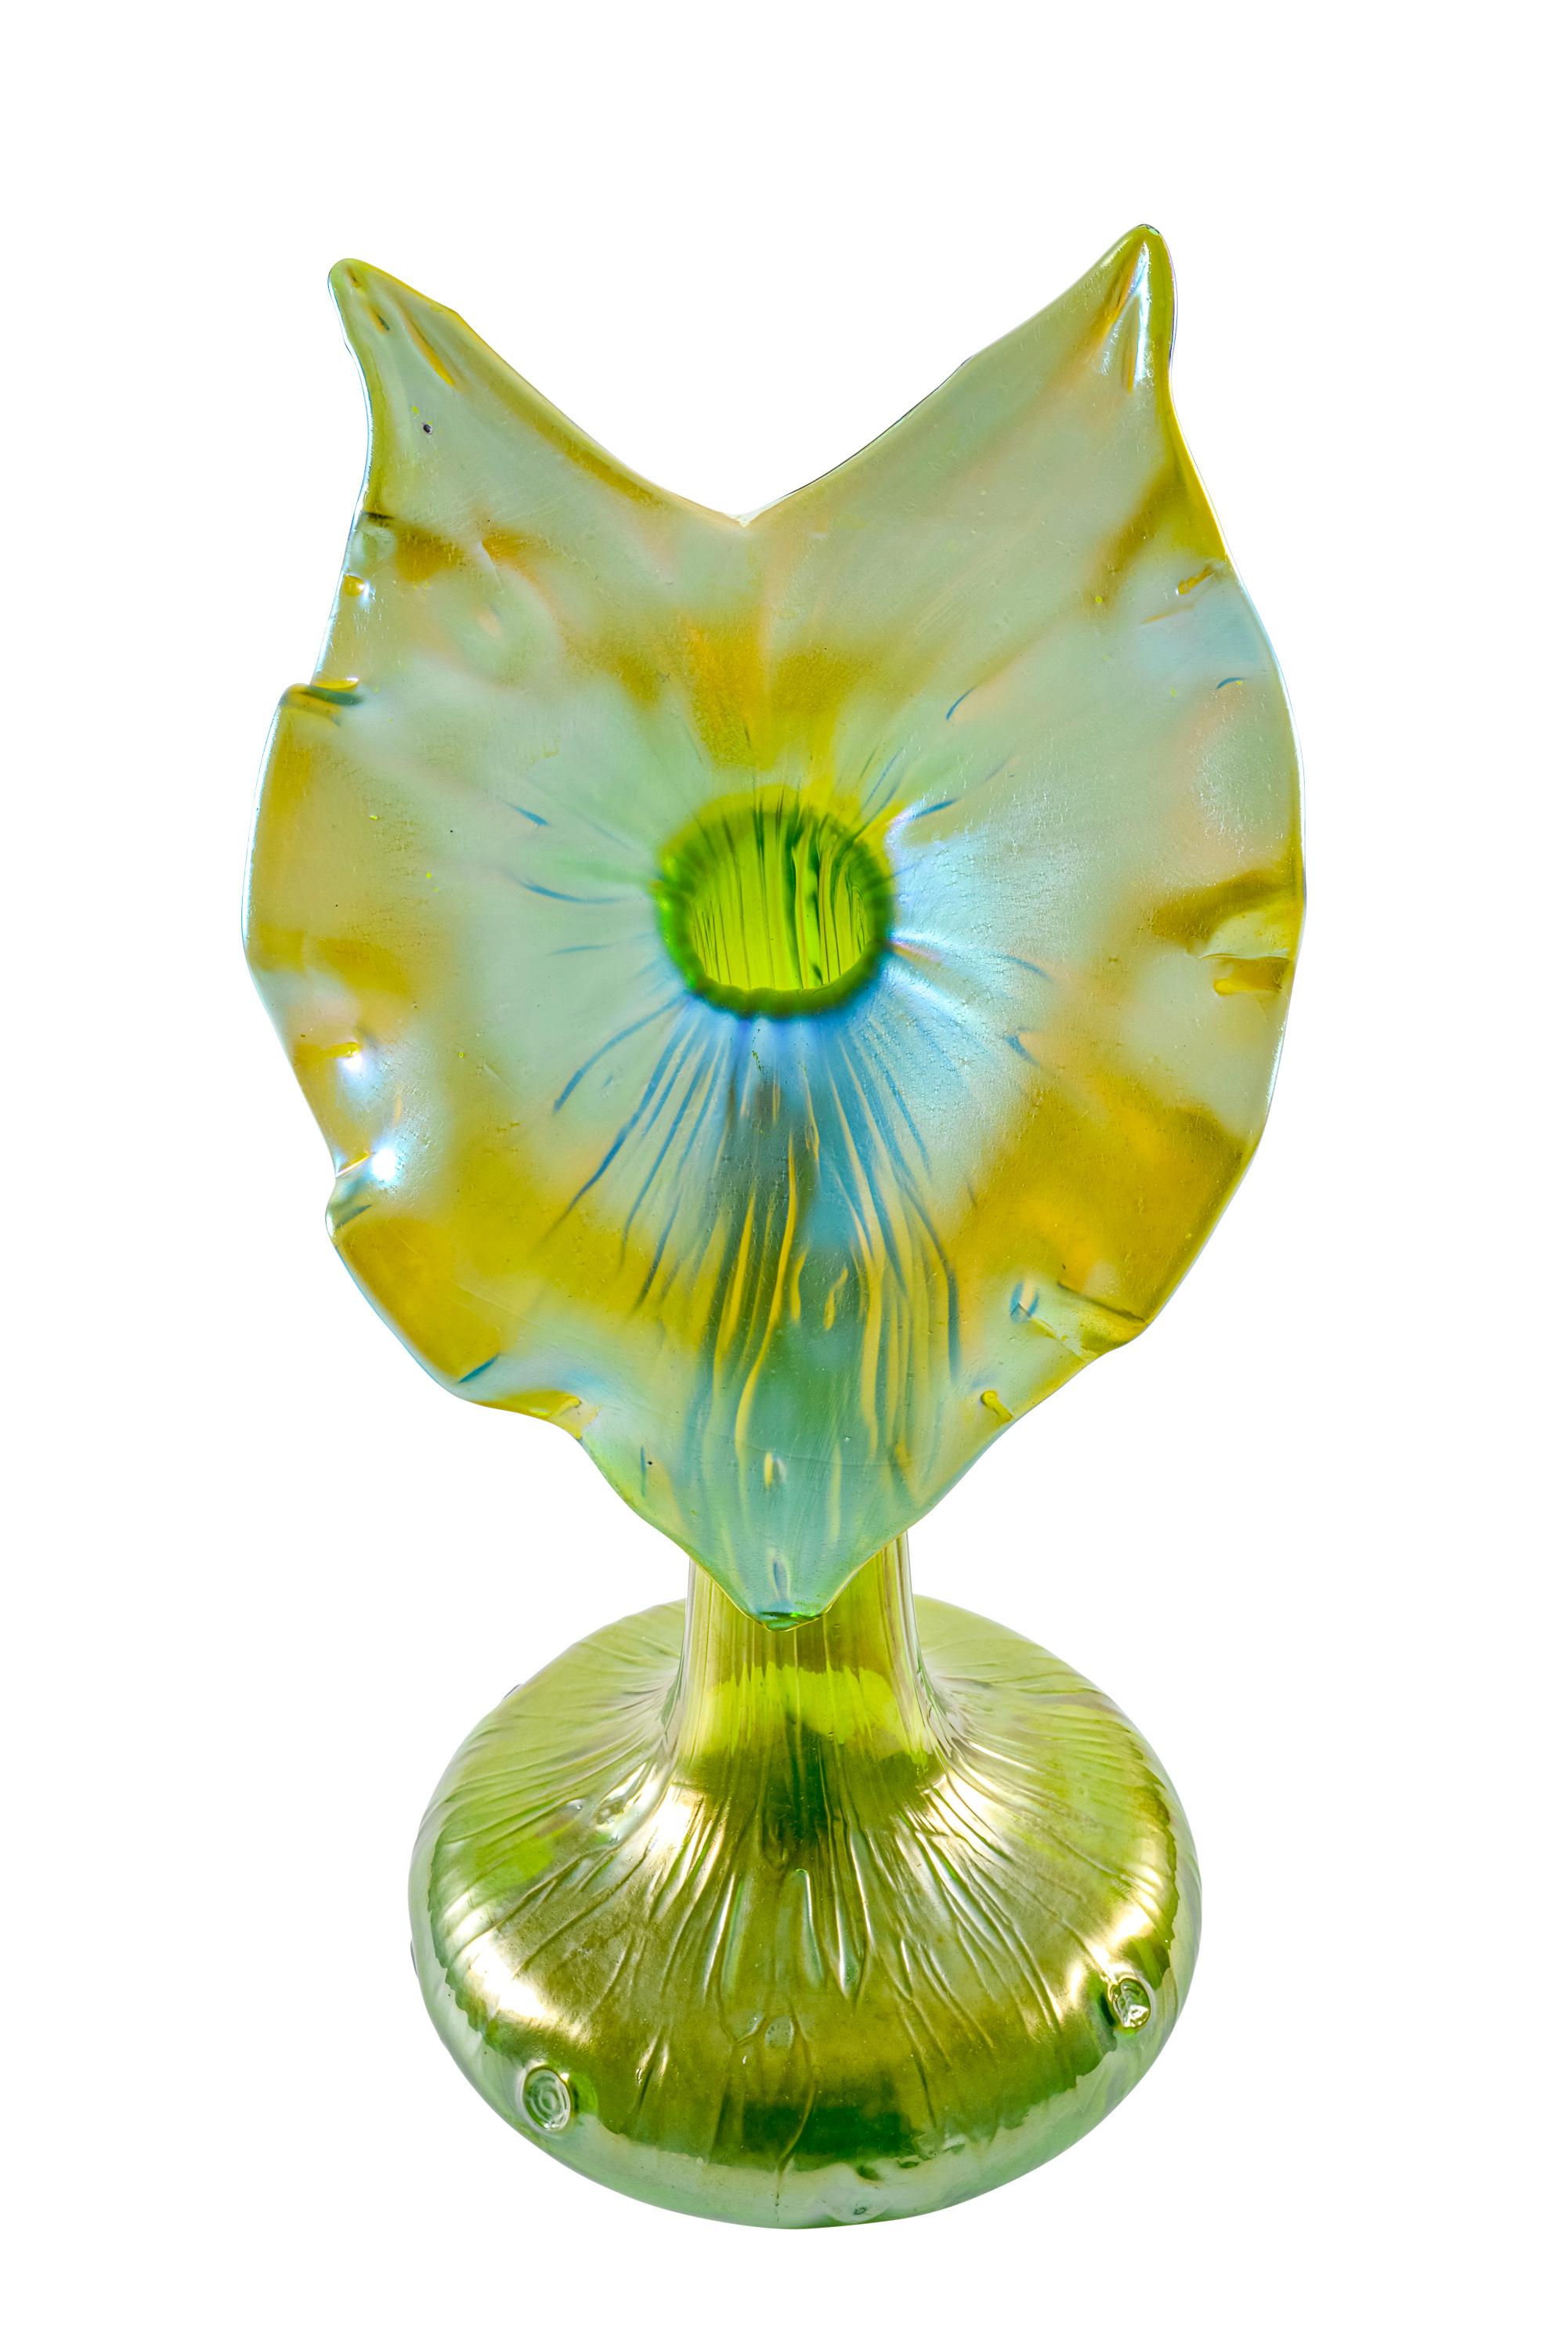 Art Nouveau Jack-in-the-Pulpit Flower Vase Loetz Glass circa 1899 Austrian Jugendstil Green For Sale